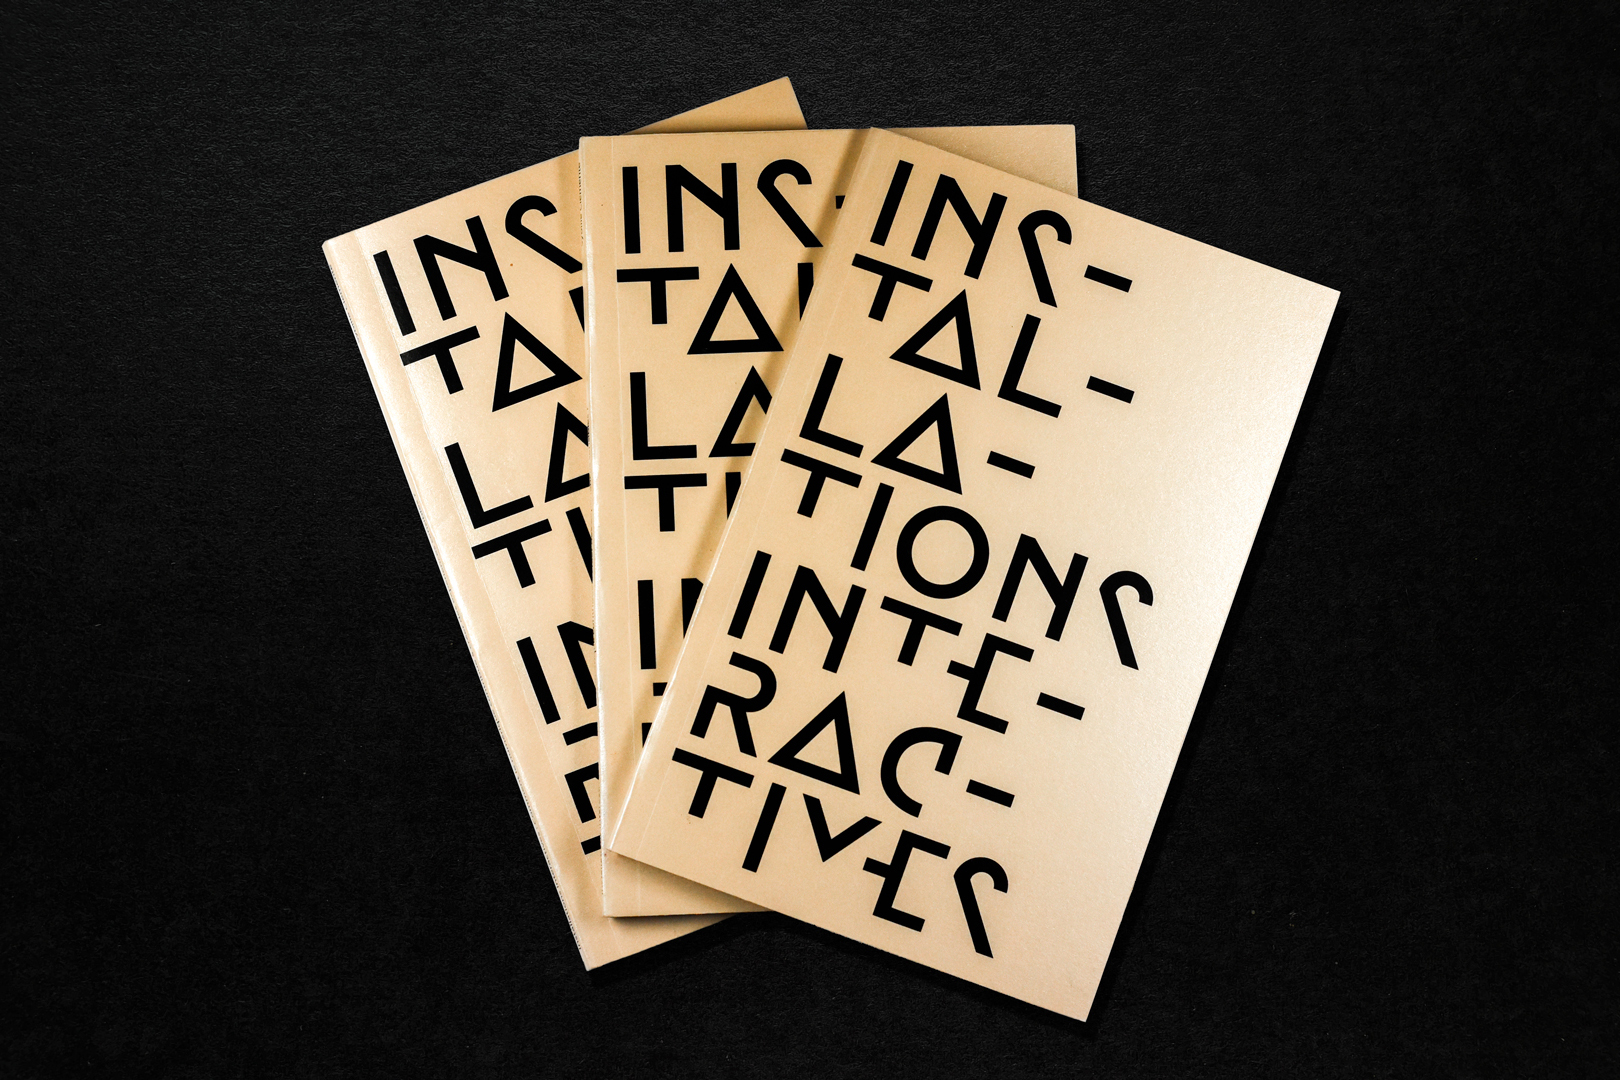 Installations interactives mémoire (master), édition, image 1, 2019, Sybille Clemente, designer graphique.